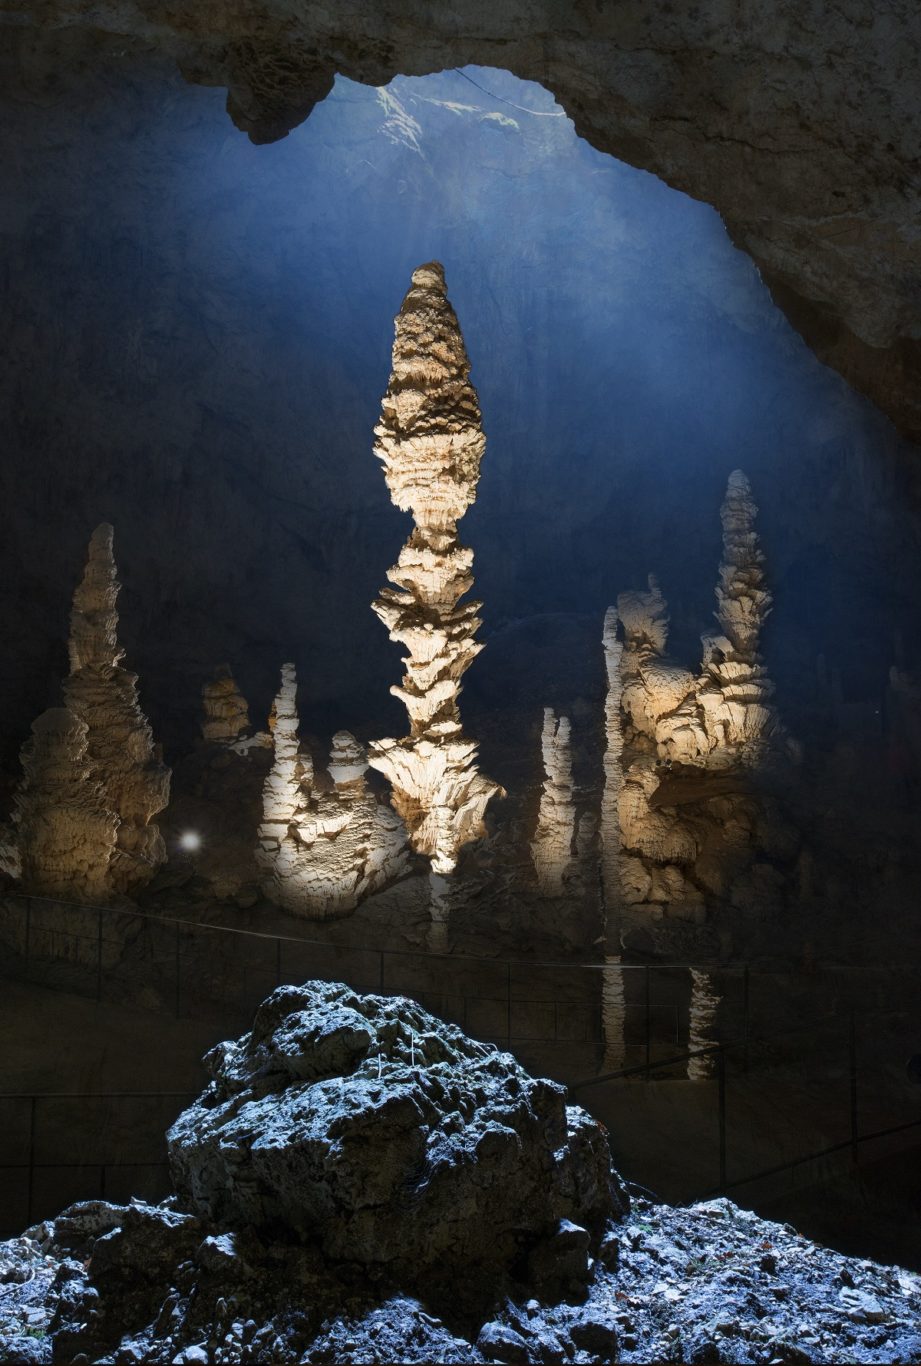 Accueil - Grotte de la Salamandre